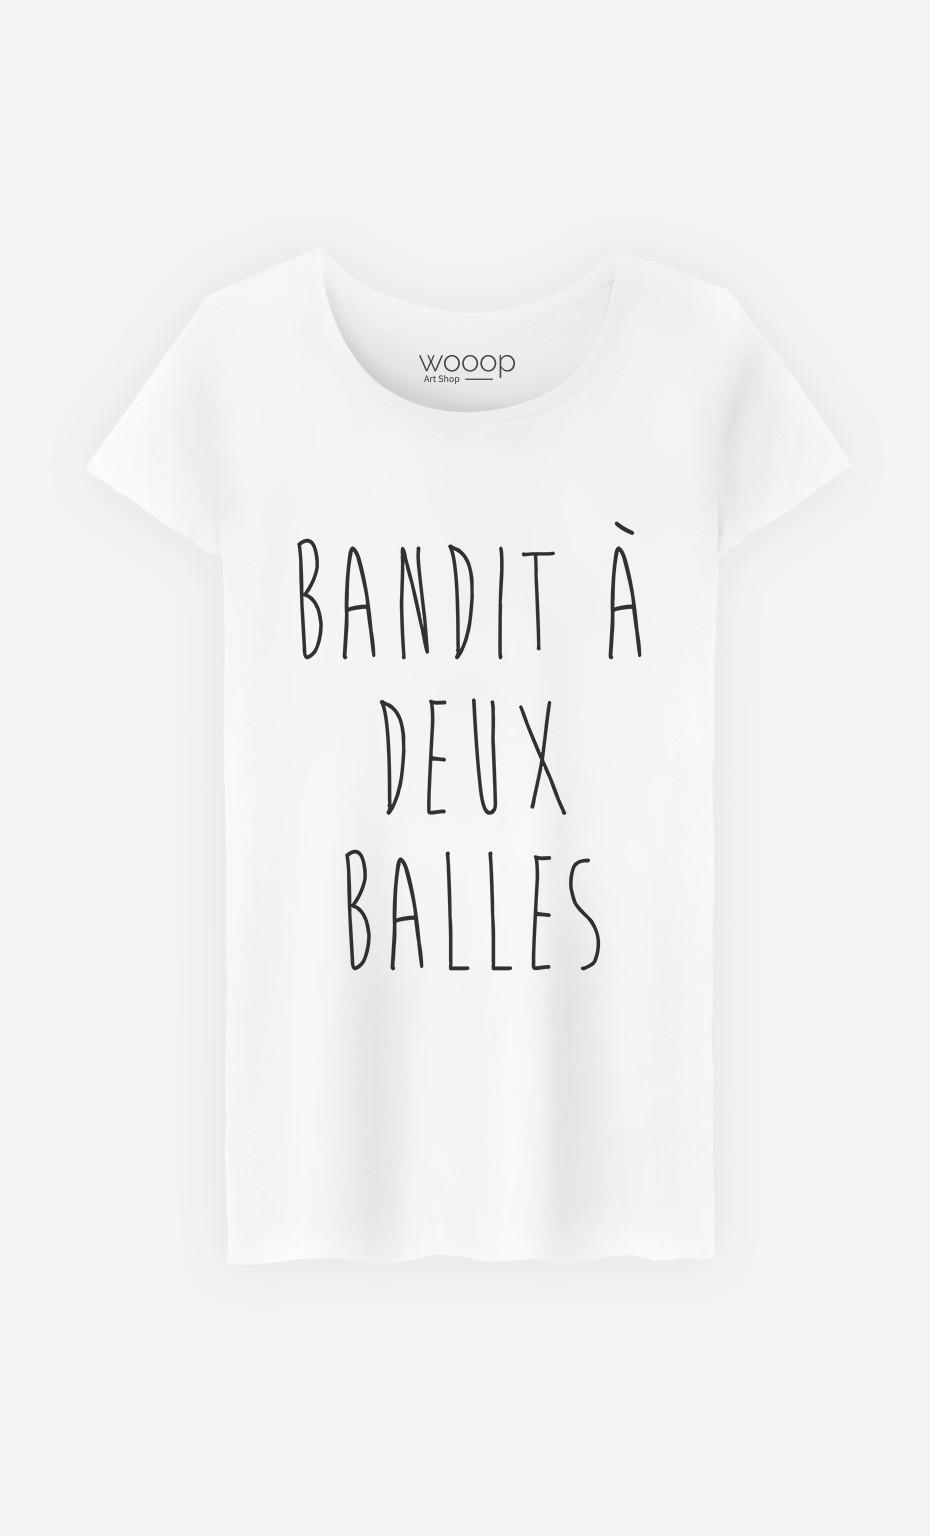 T-Shirt Femme Bandit 2